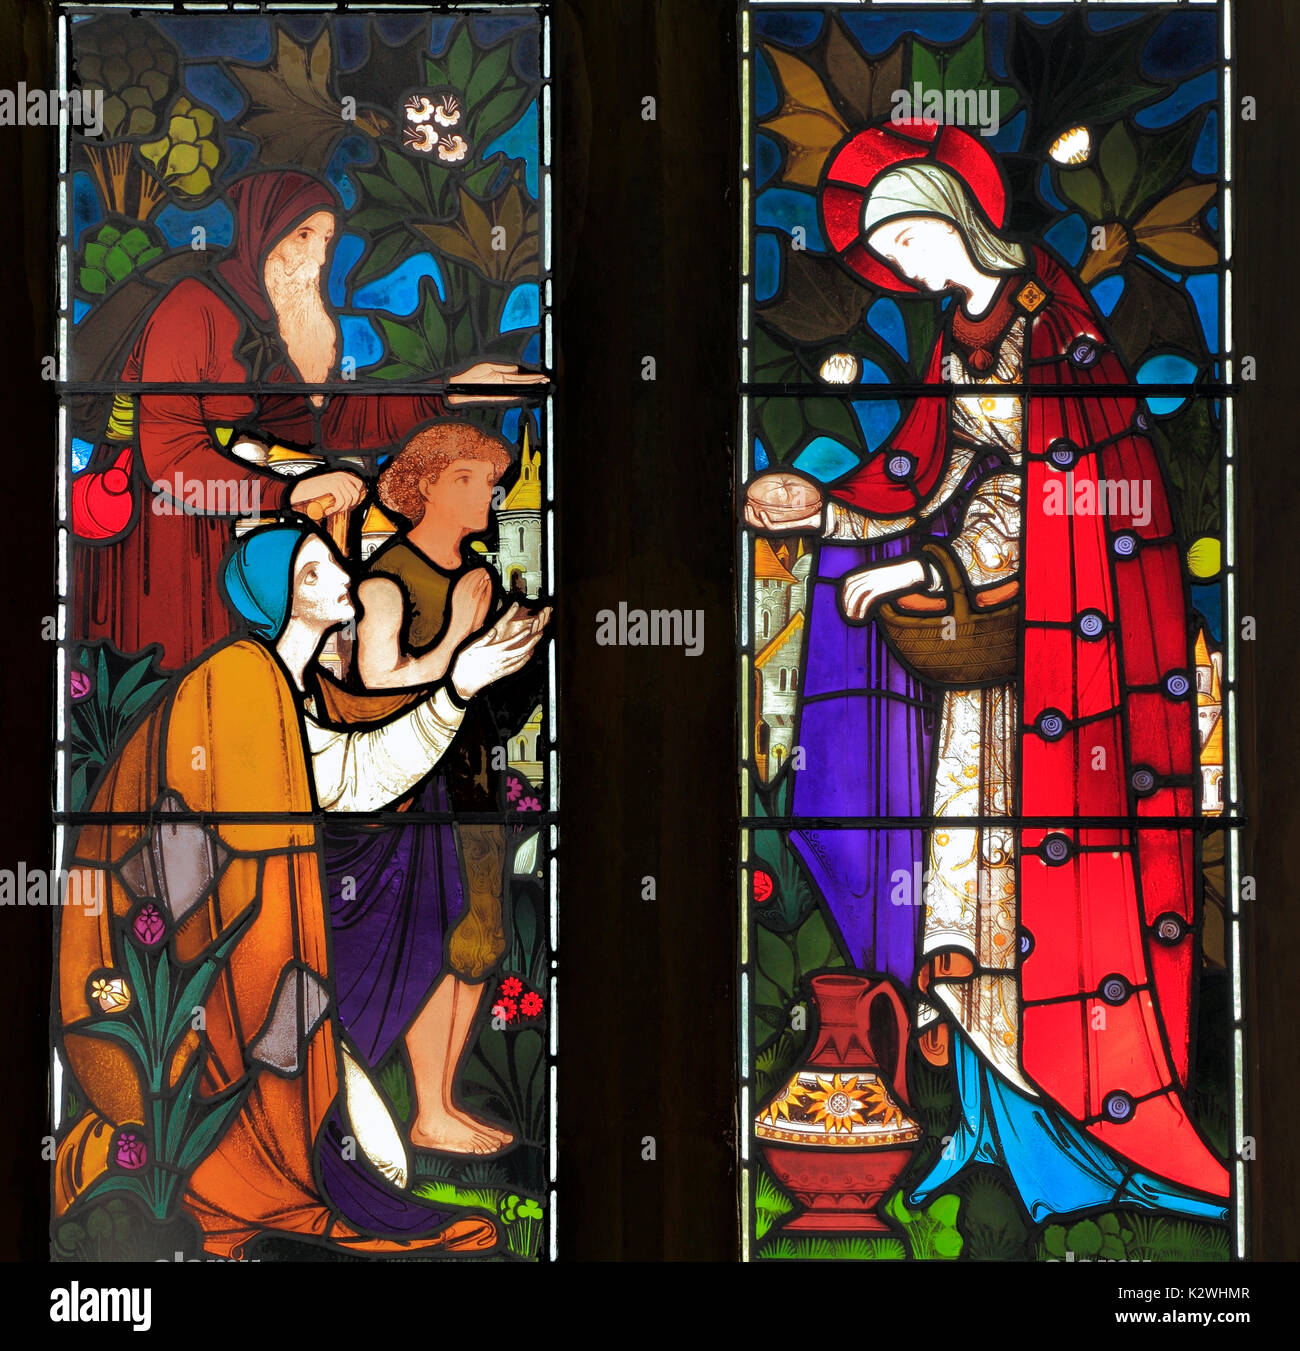 Taten der Barmherzigkeit, das Füttern der hungrigen, Glasfenster, Heaton Butler & Bayne 1863, Dunton, Norfolk, England, Großbritannien Stockfoto